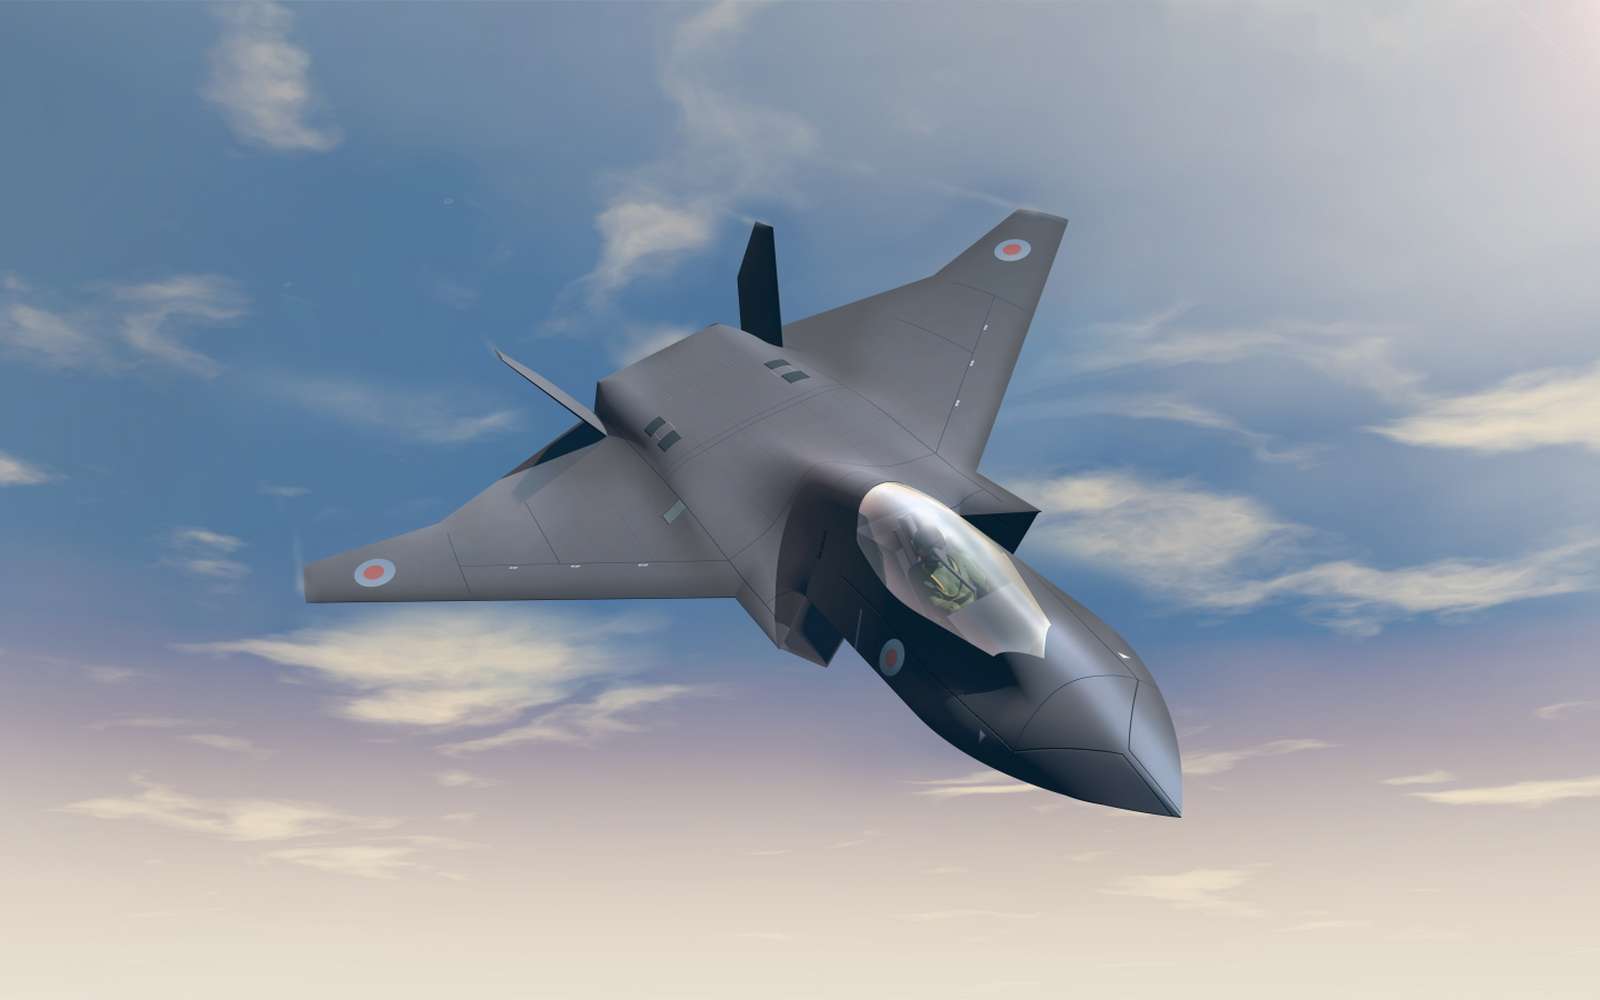 Image virtuelle du démonstrateur Tempest, le futur avion de sixième génération. © BAE Systems